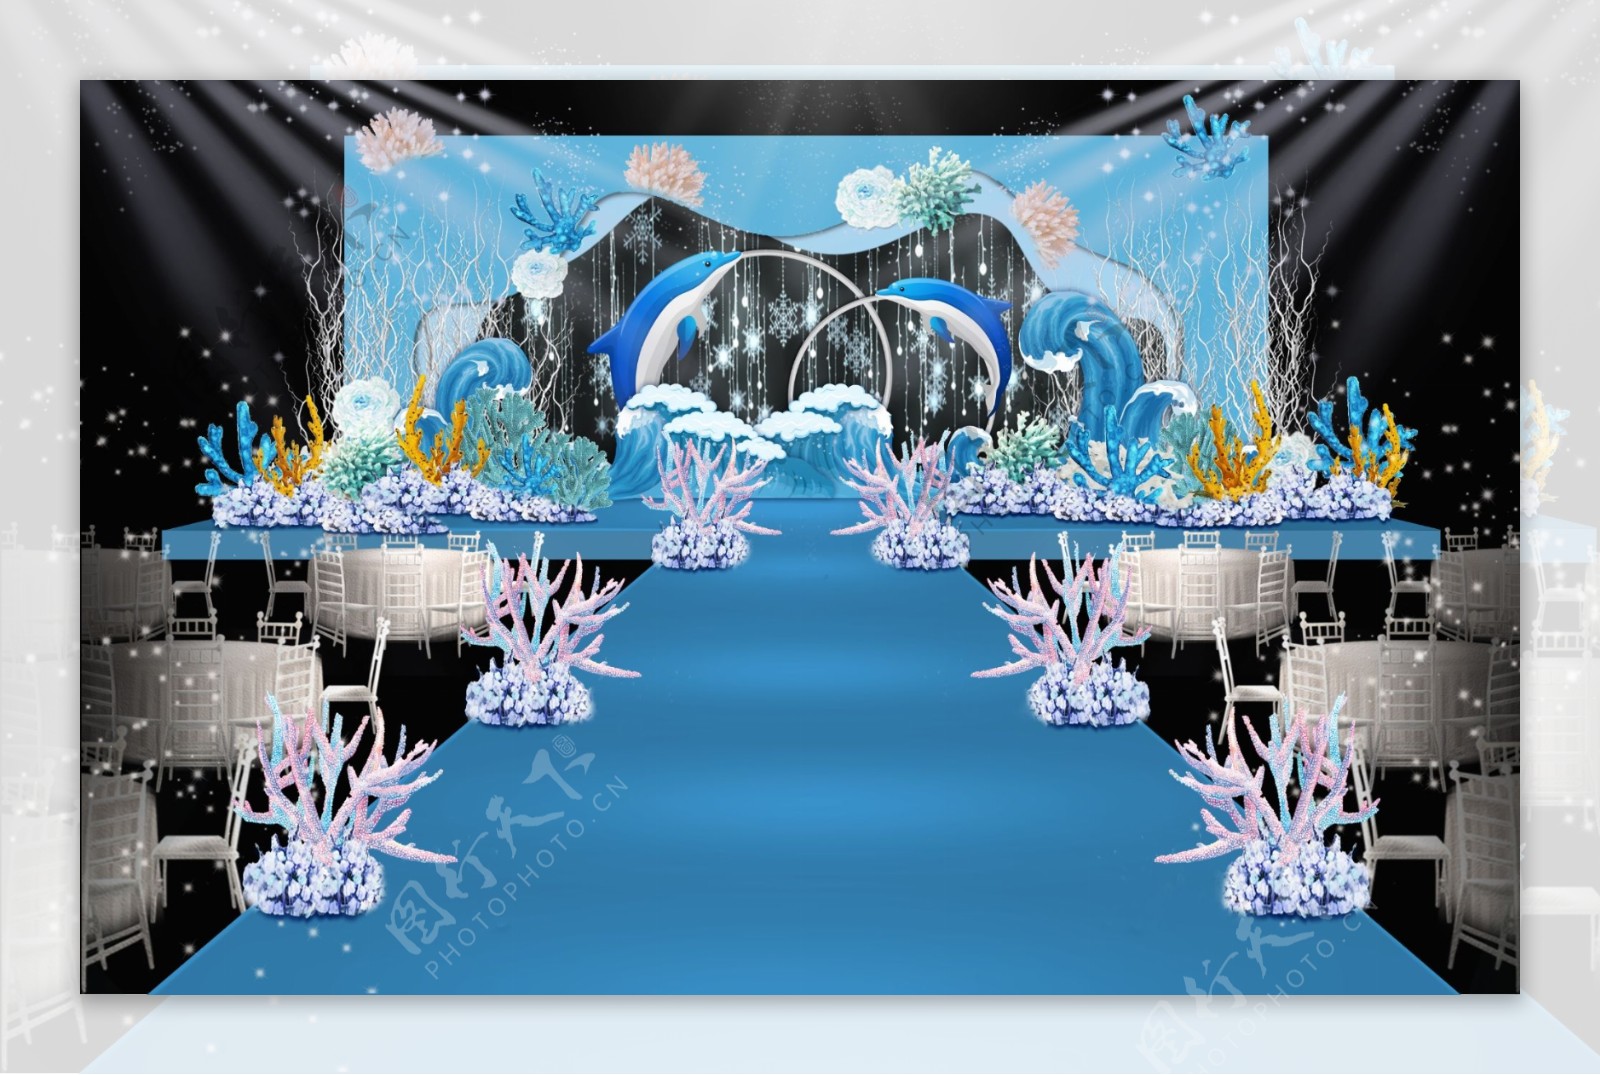 蓝白色系海洋主题婚礼舞台效果图